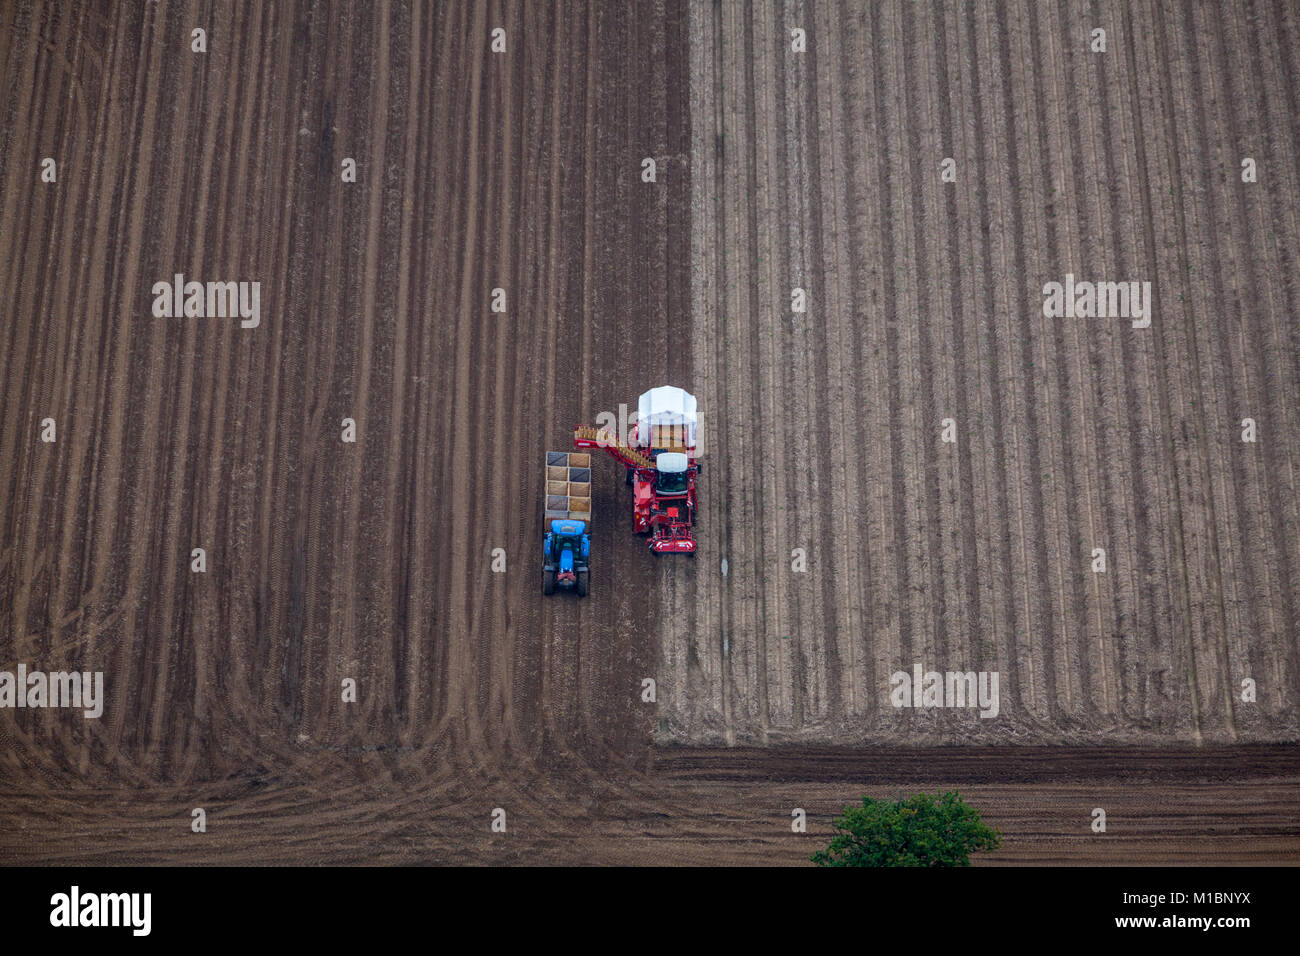 Vue aérienne de la récolte de pommes de terre, de l'agriculture, près du village de l'oeil, Suffolk, UK. Banque D'Images